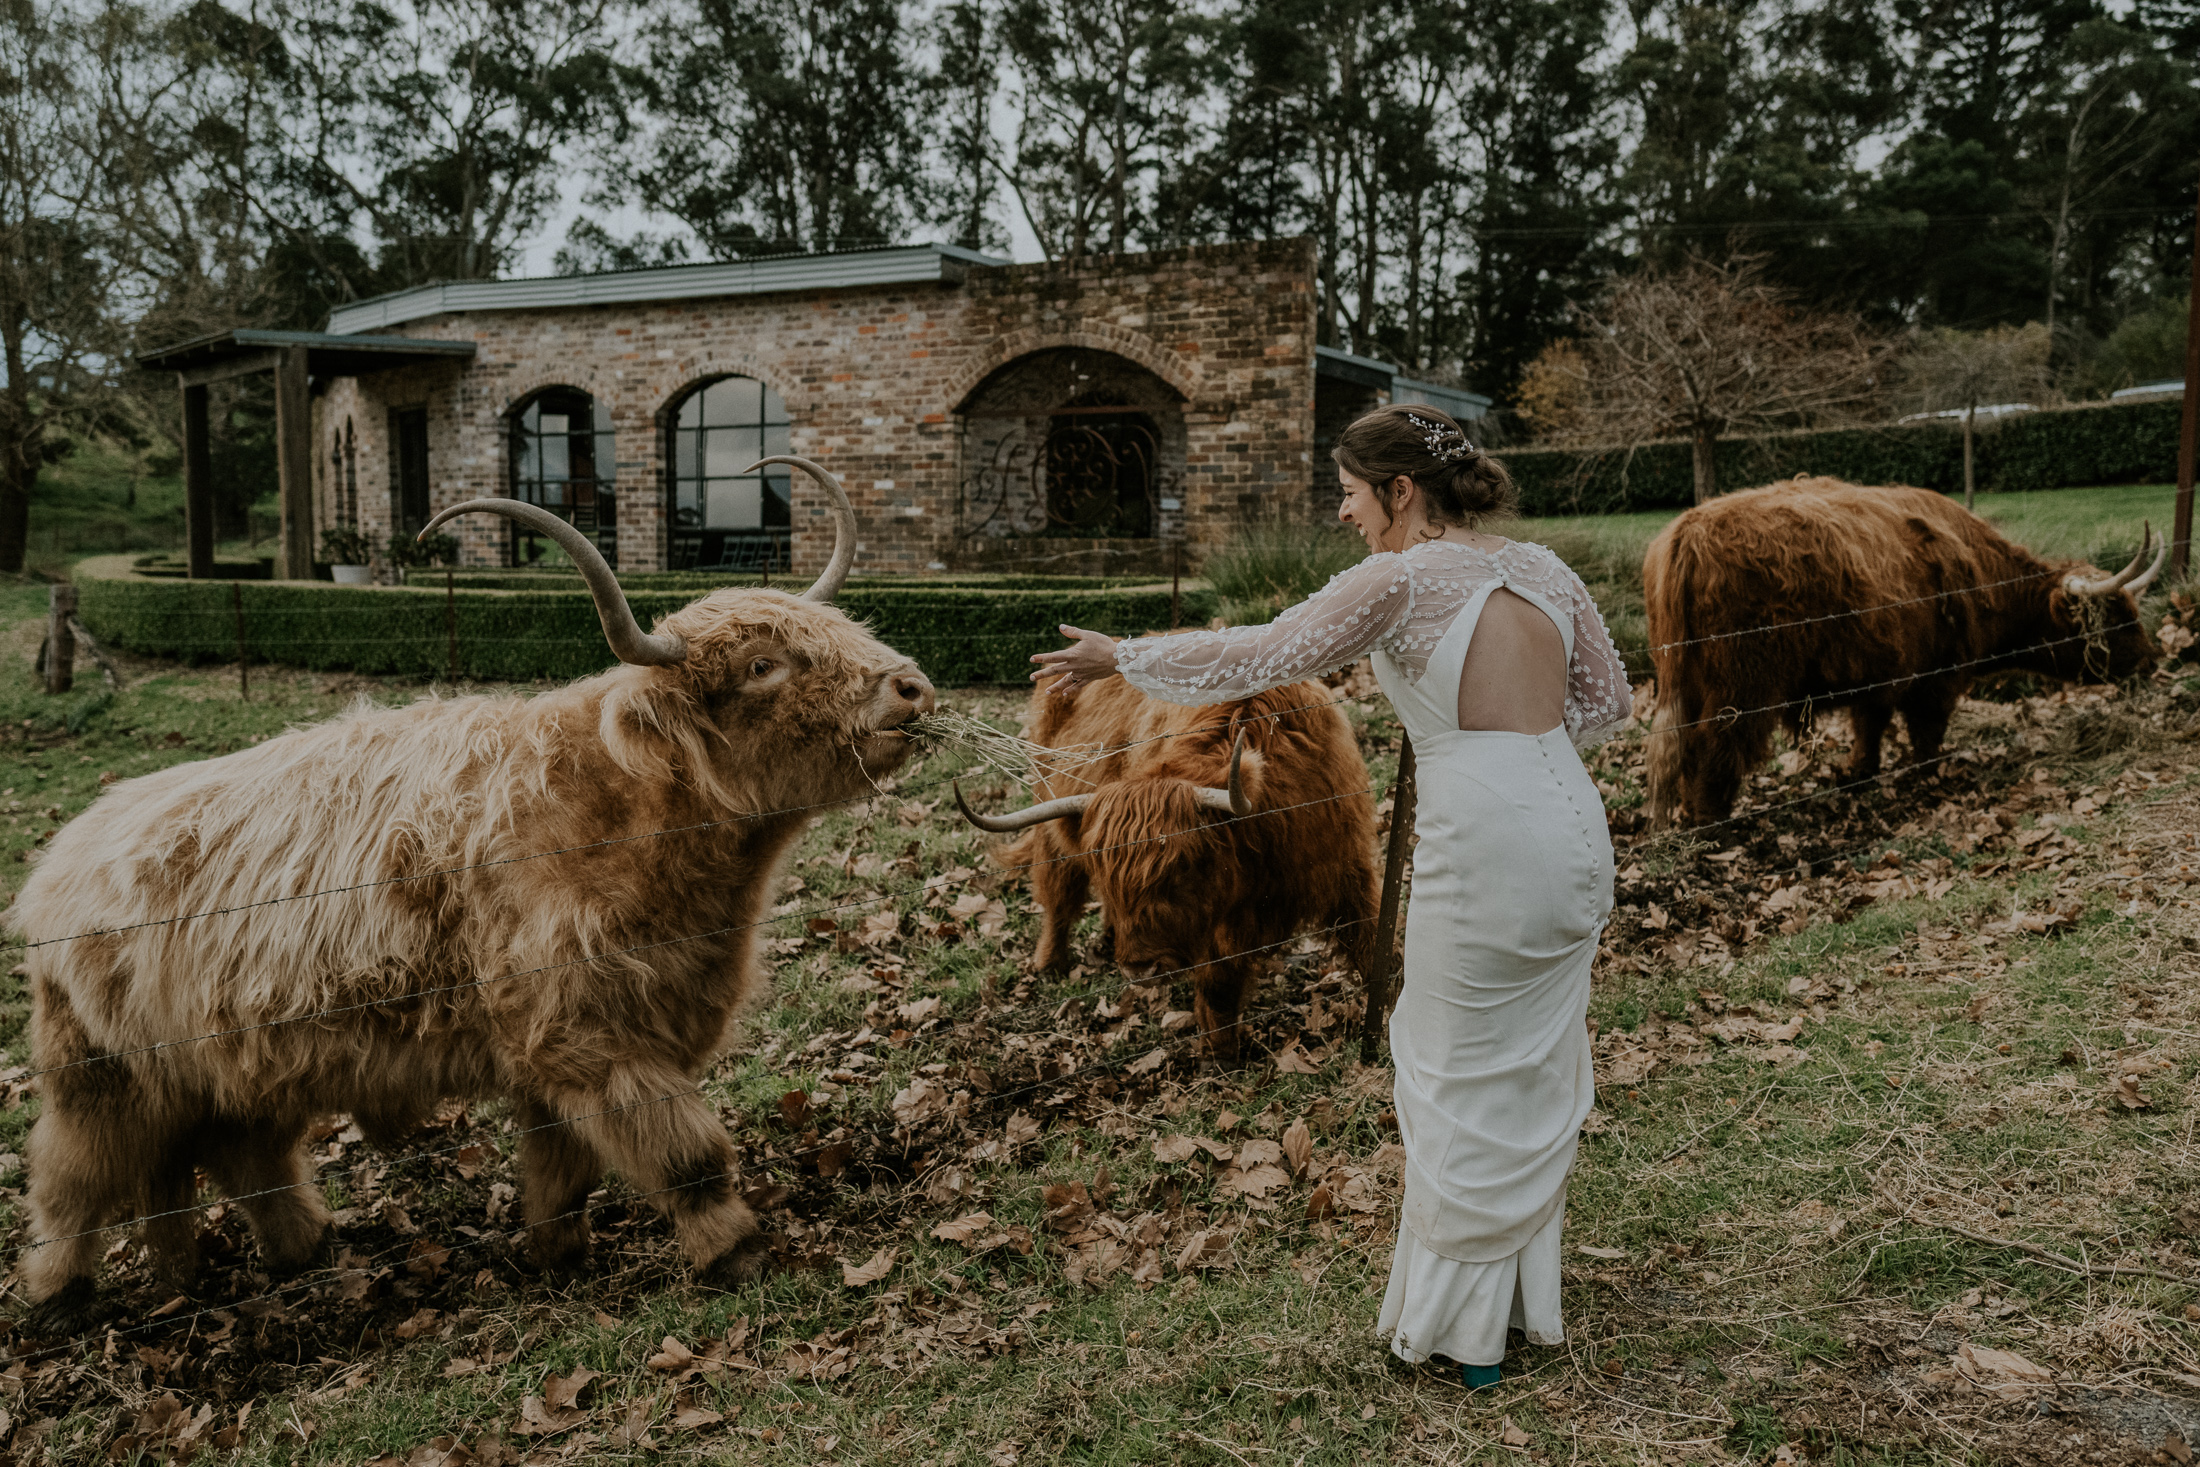 Mali Brae Farm wedding